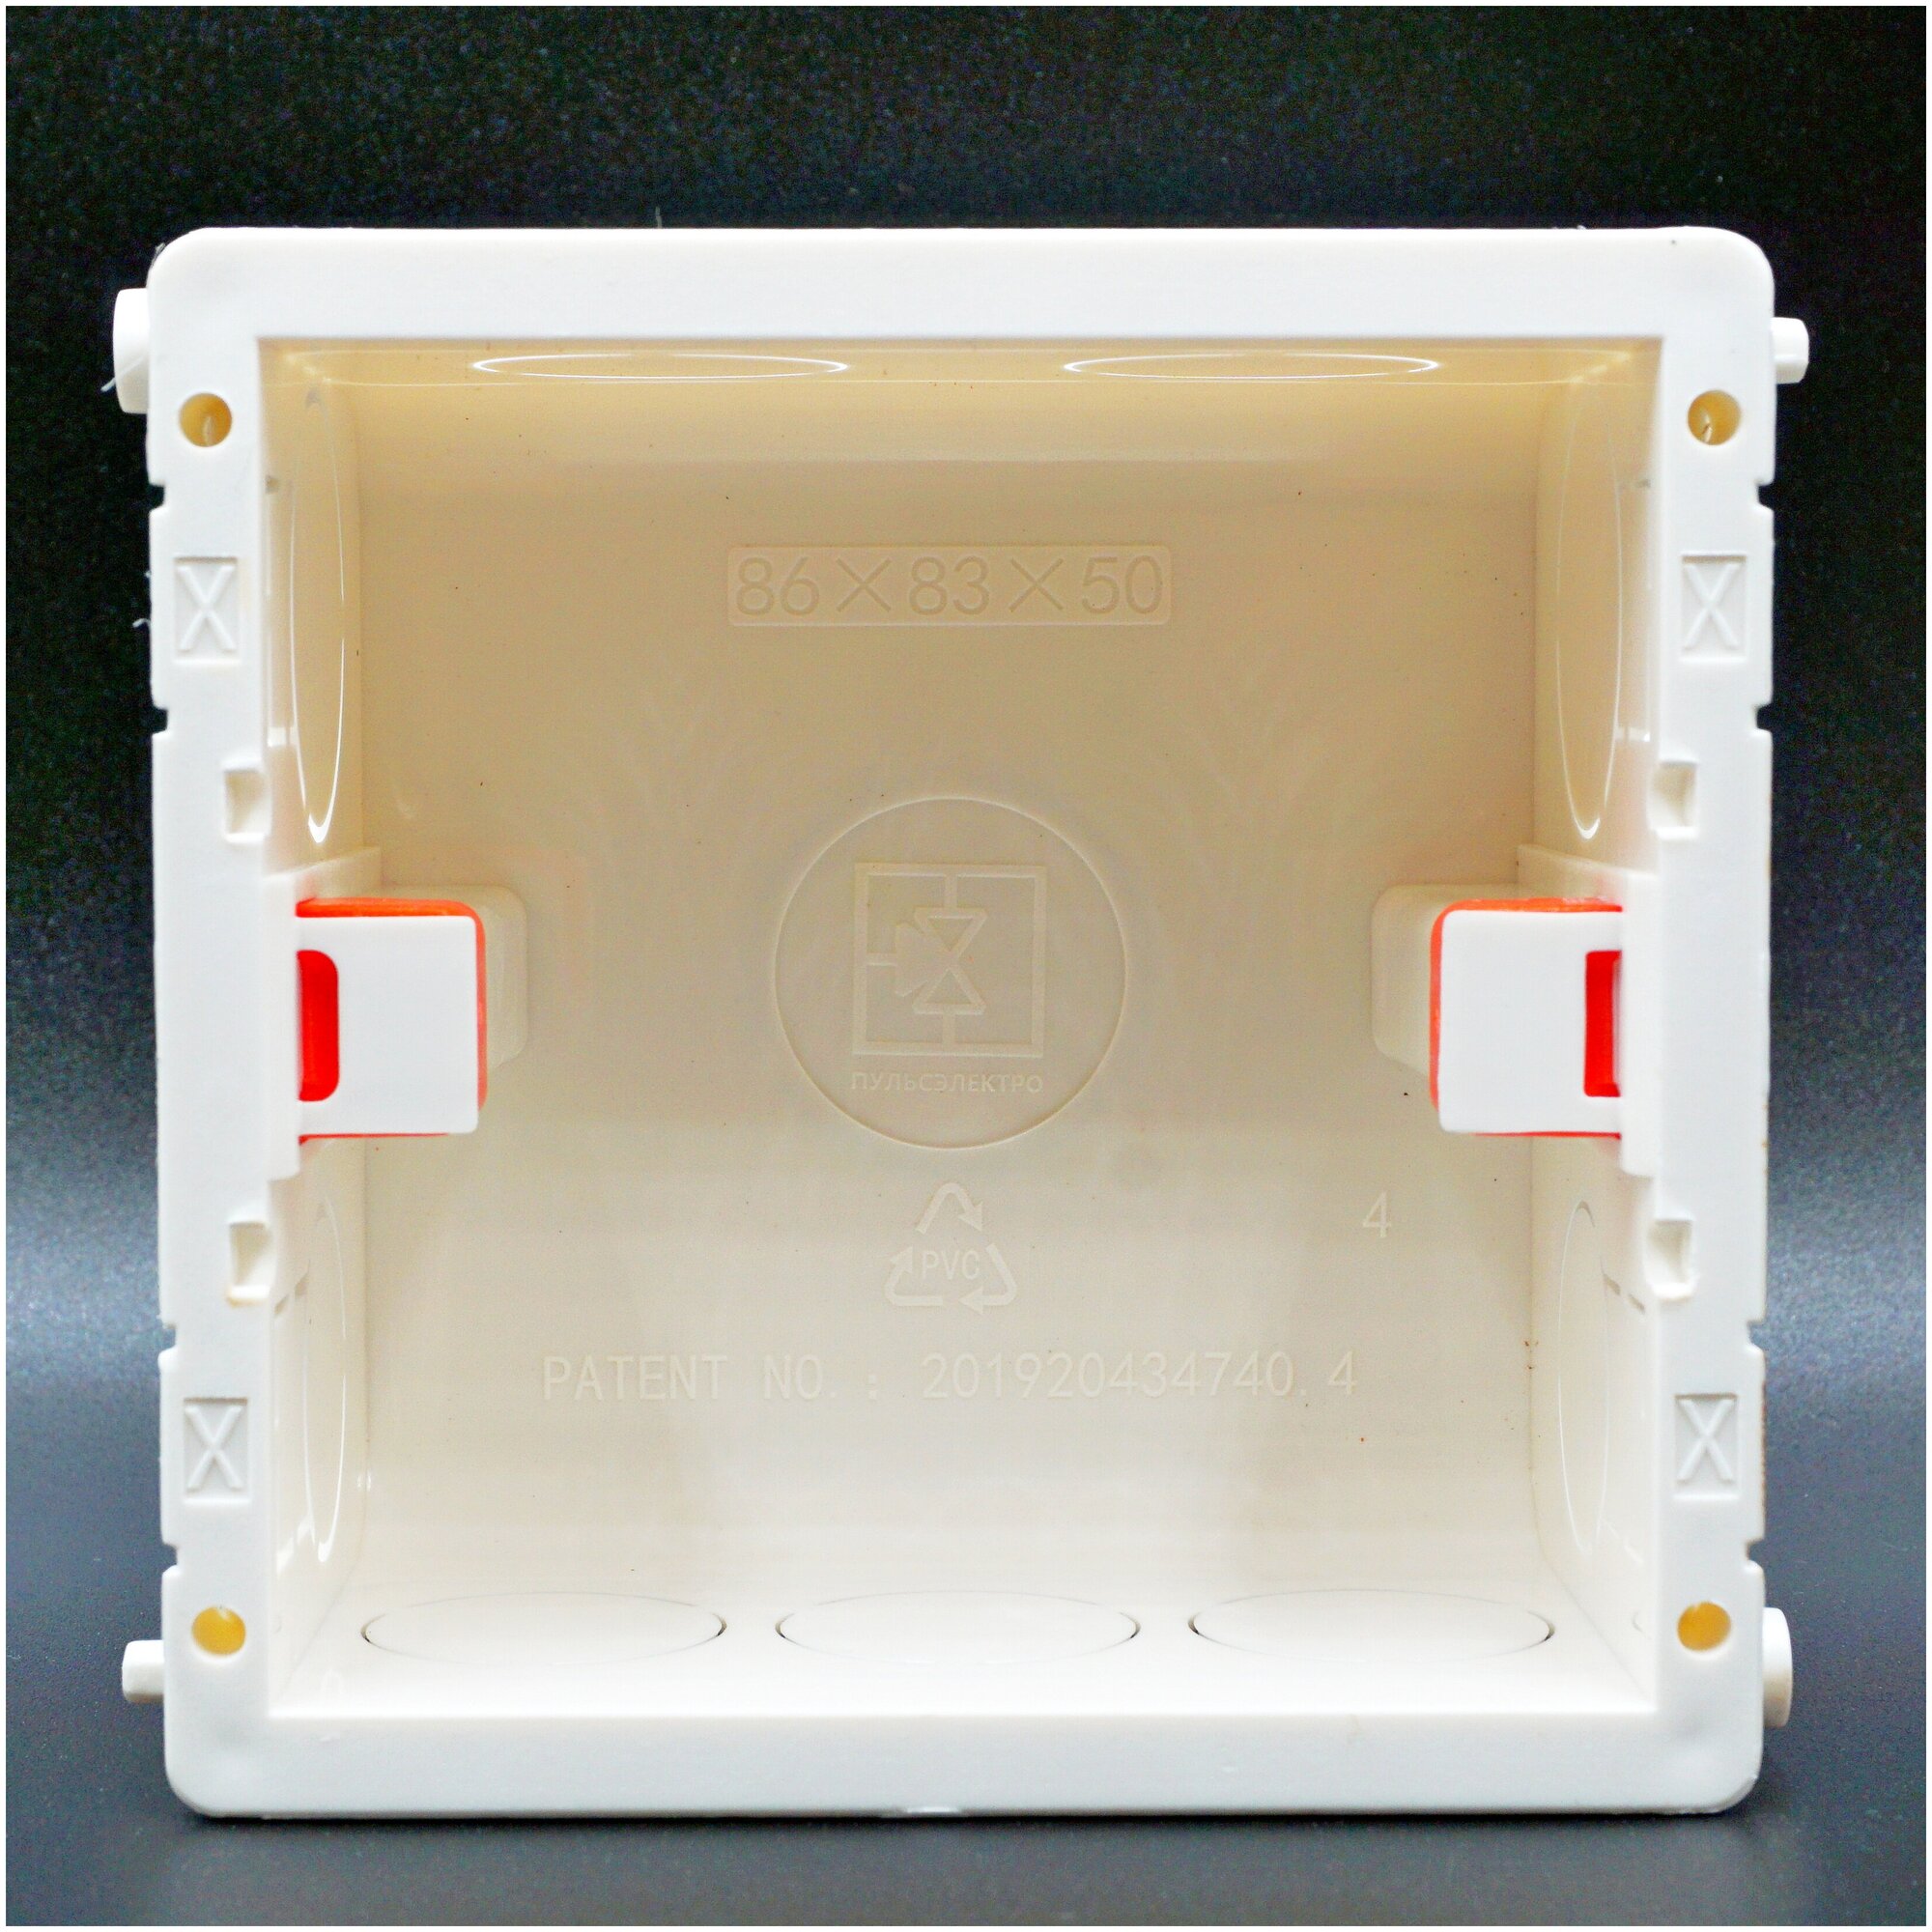 Квадратный подрозетник (коробка монтажная)86x83x50 мм для изделий Schneider Electric и Xiaomi Aqara и других обладающих квадратной внутренней частью.